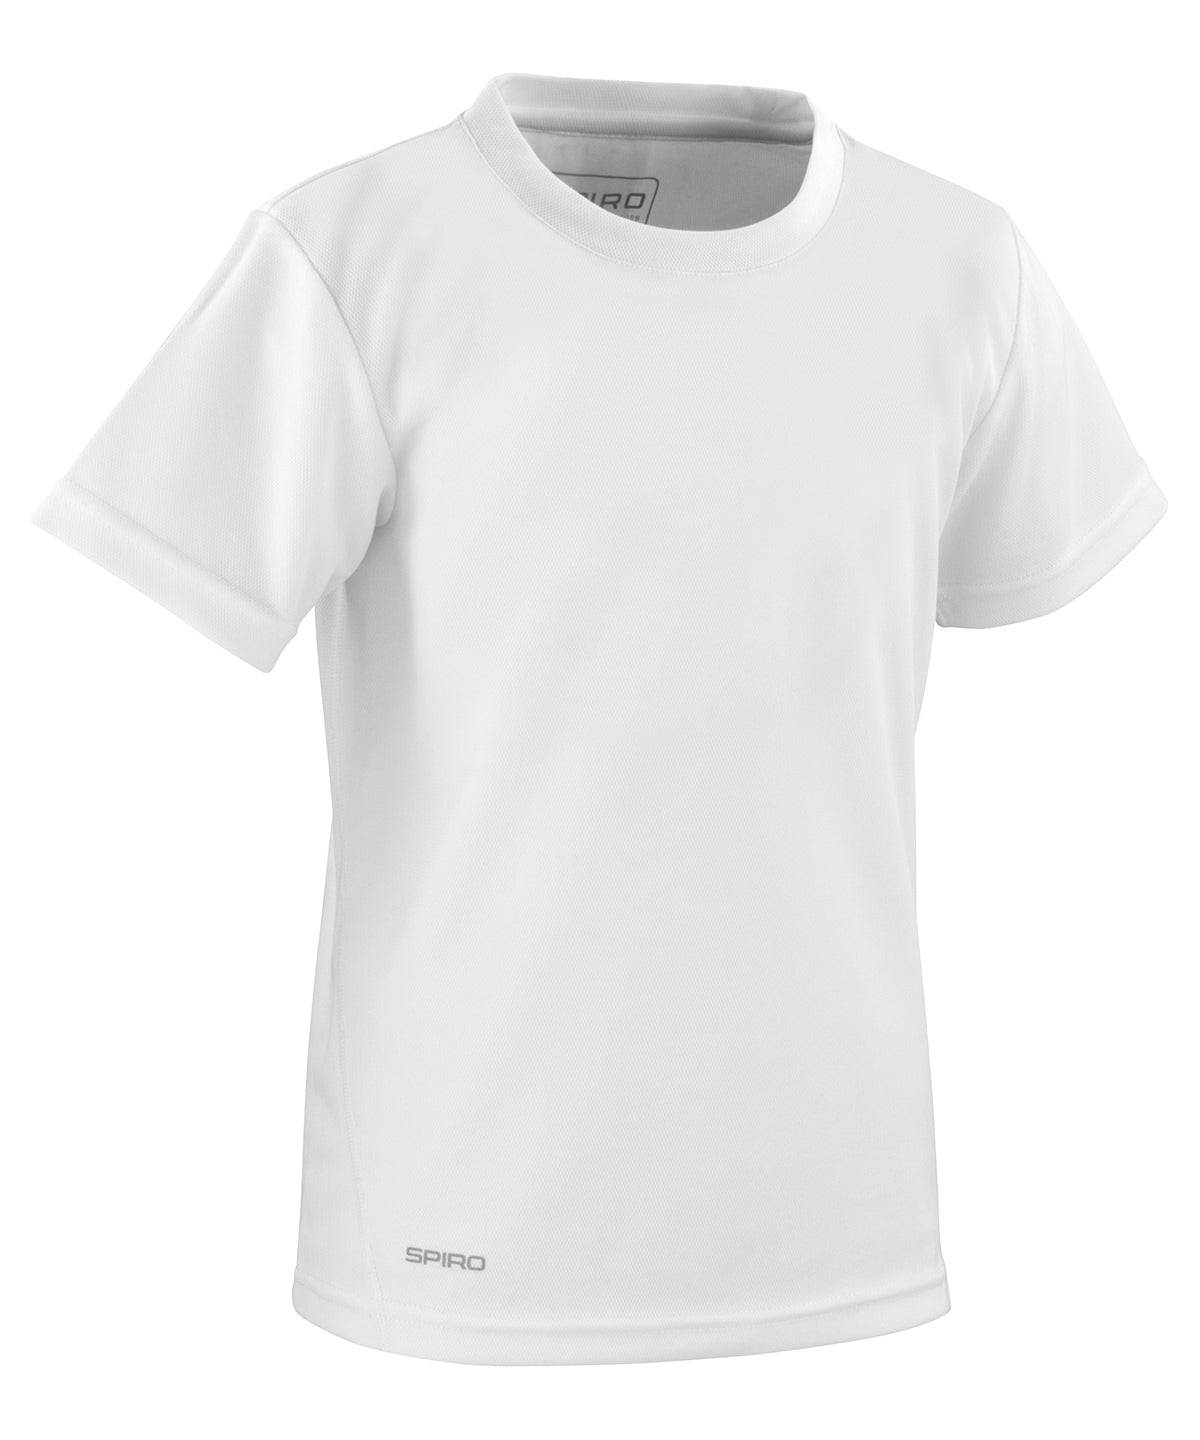 Stuttermabolir - Spiro Quick-dry Short Sleeve Junior T-shirt